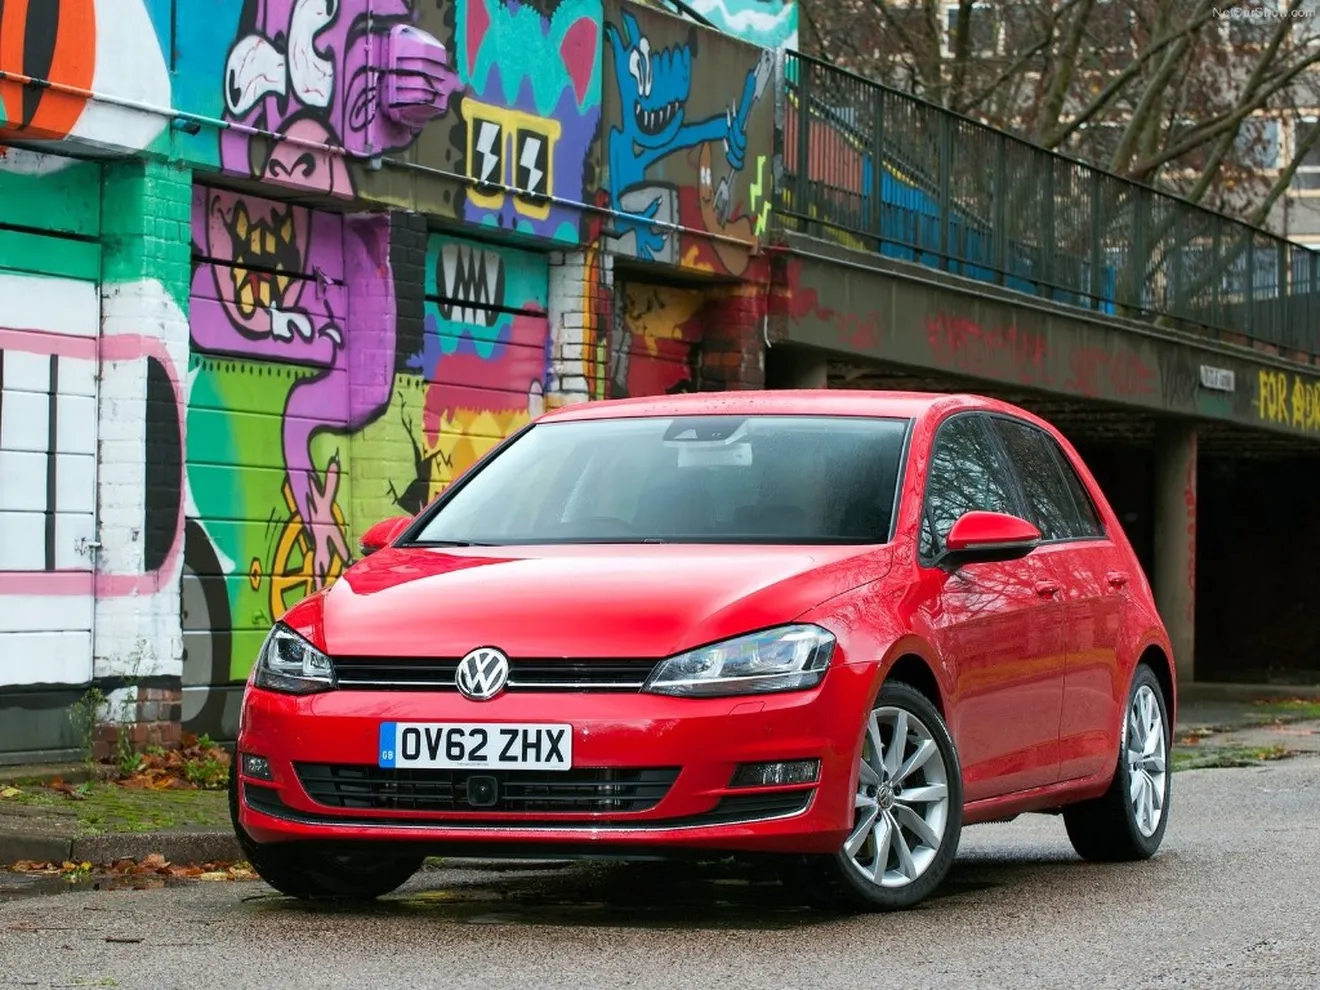 Reino Unido - Febrero 2015: El Volkswagen Golf dobla sus ventas